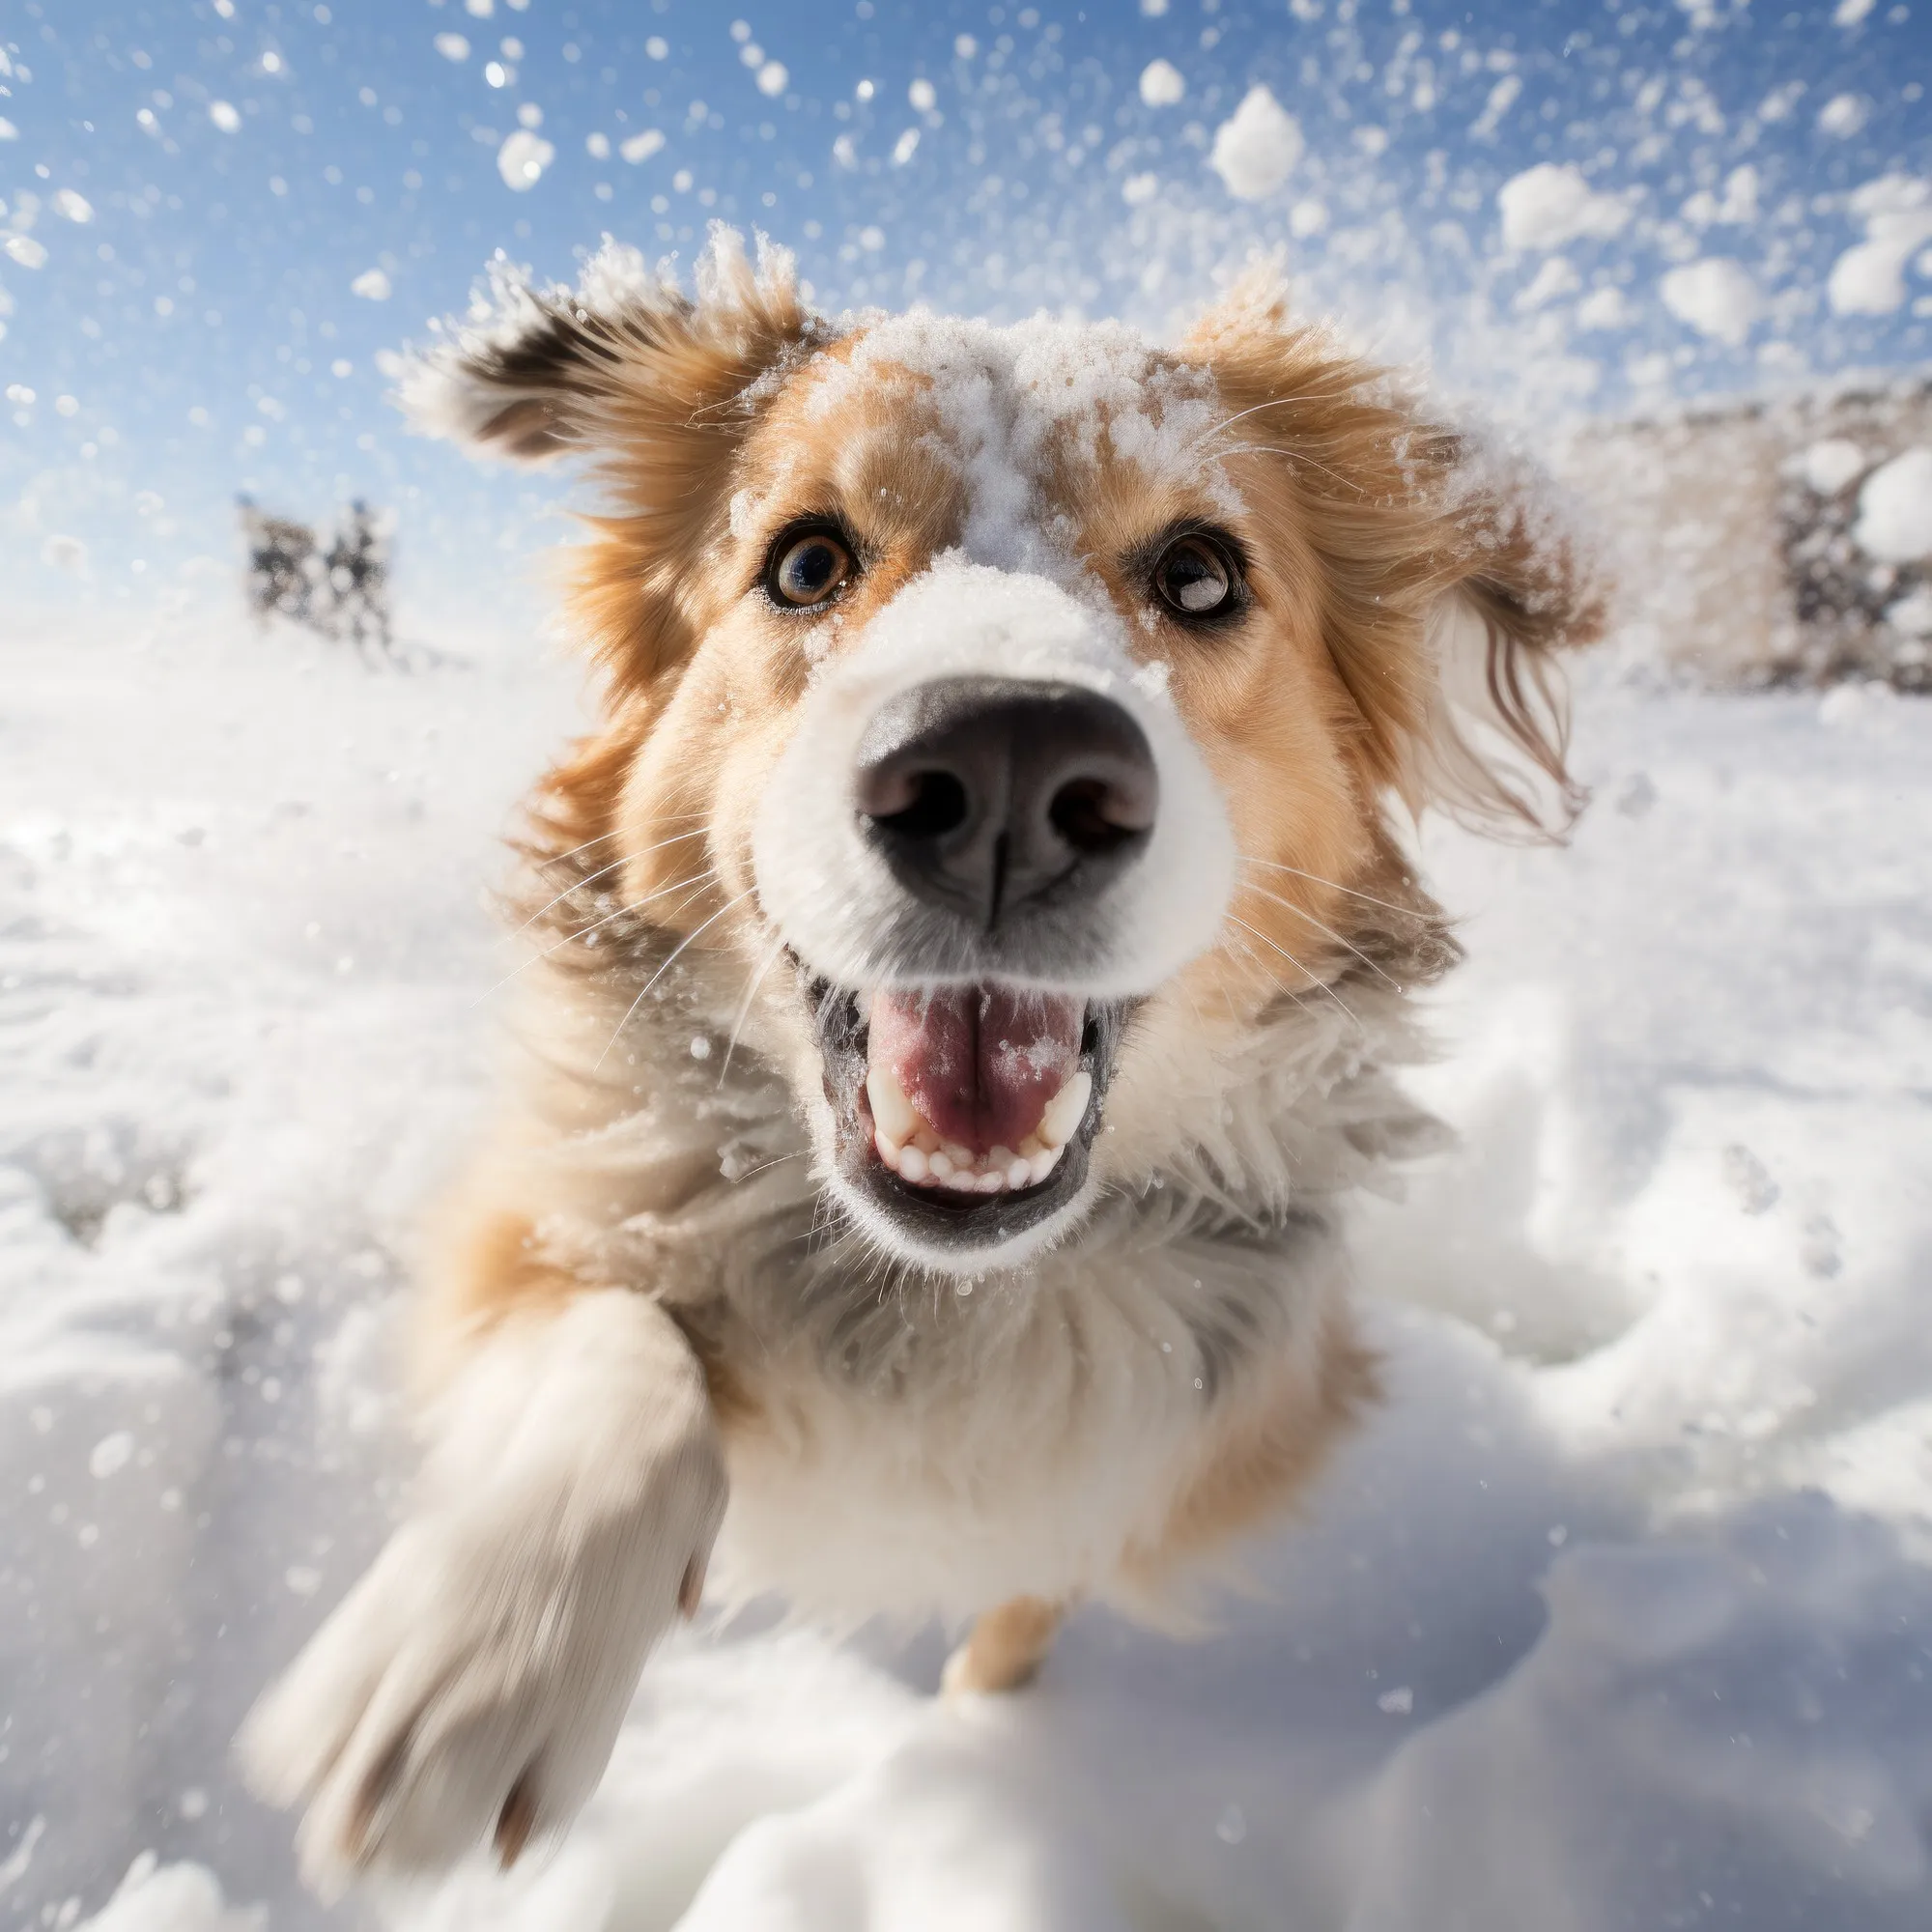 Outdoorfotografie - Hund im Schnee